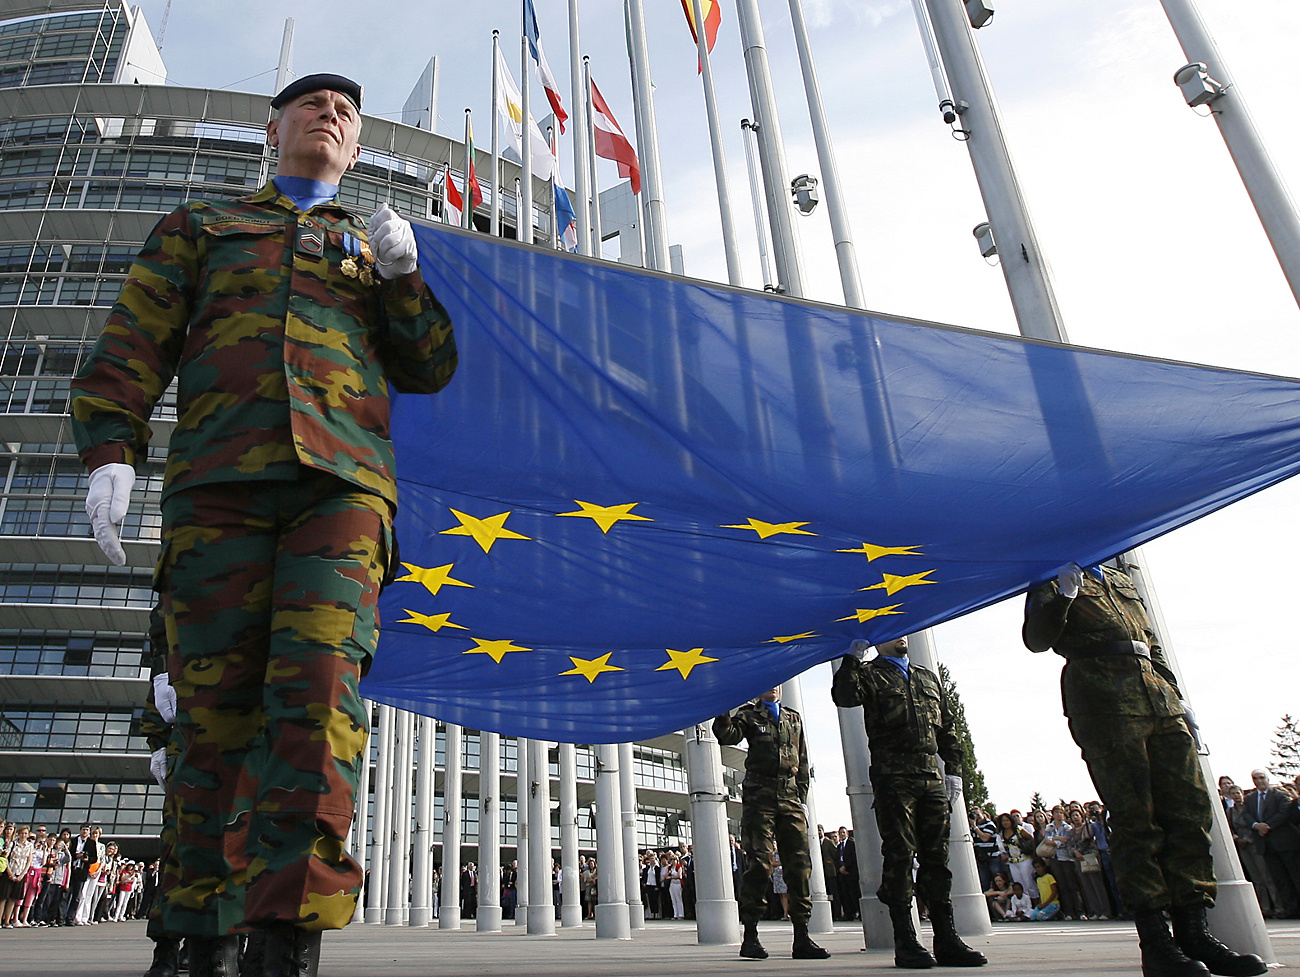 europa-unione-difesa